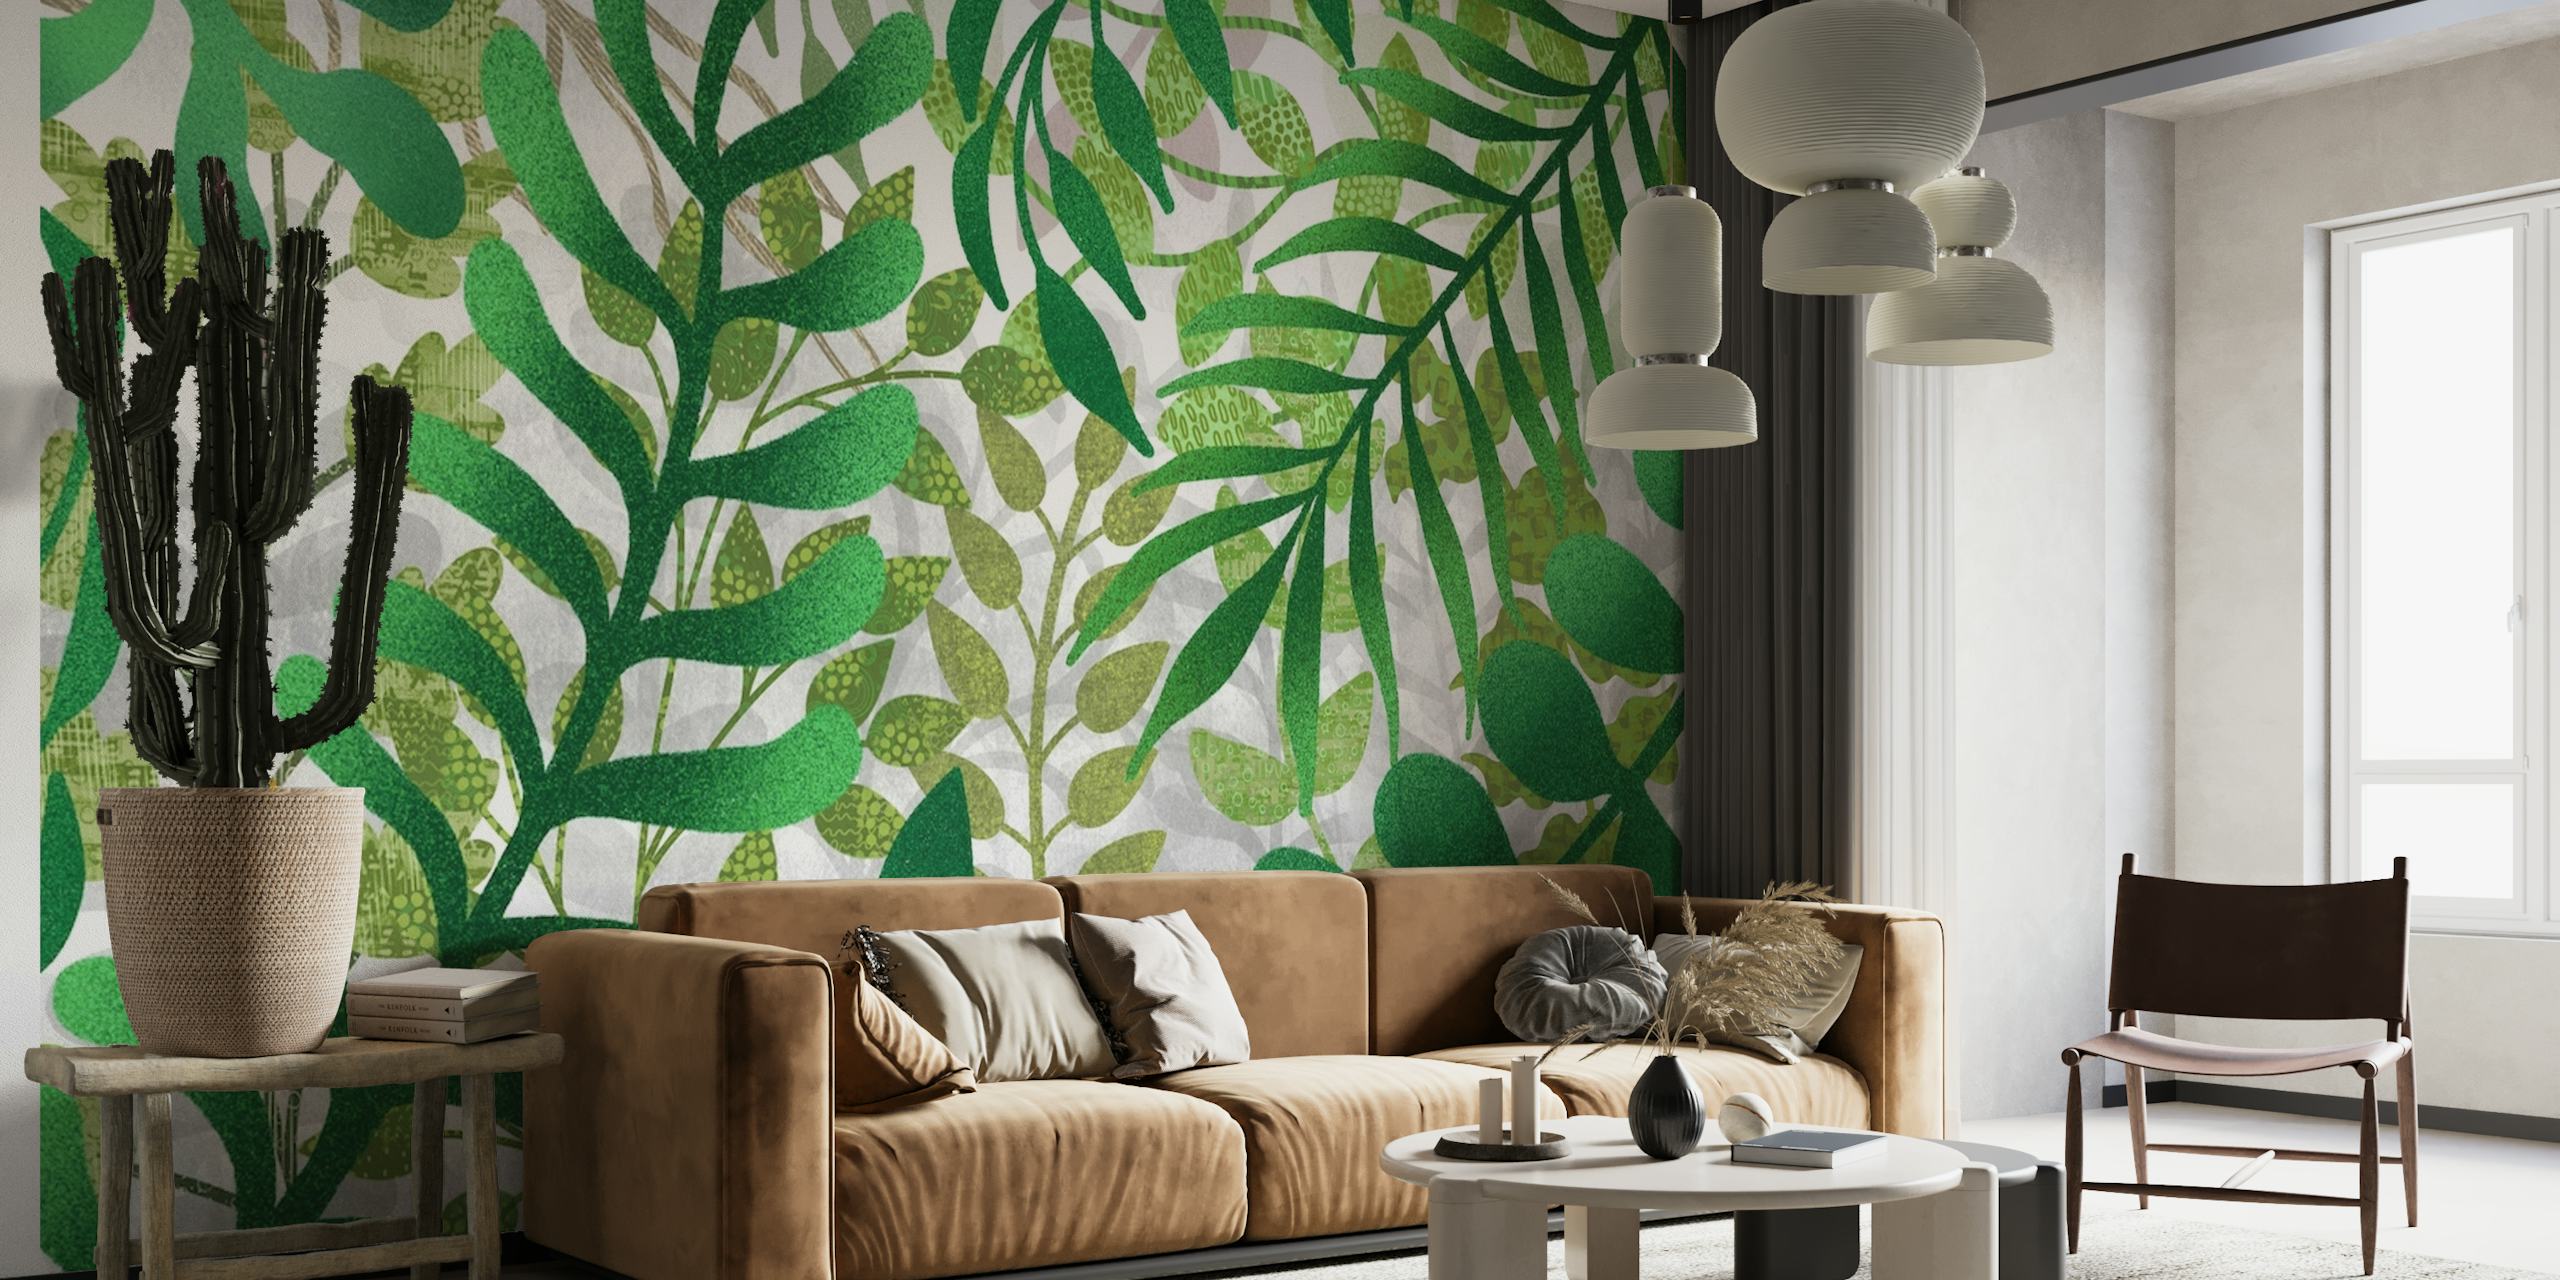 Fotomural de hojas verdes exuberantes para decoración del hogar